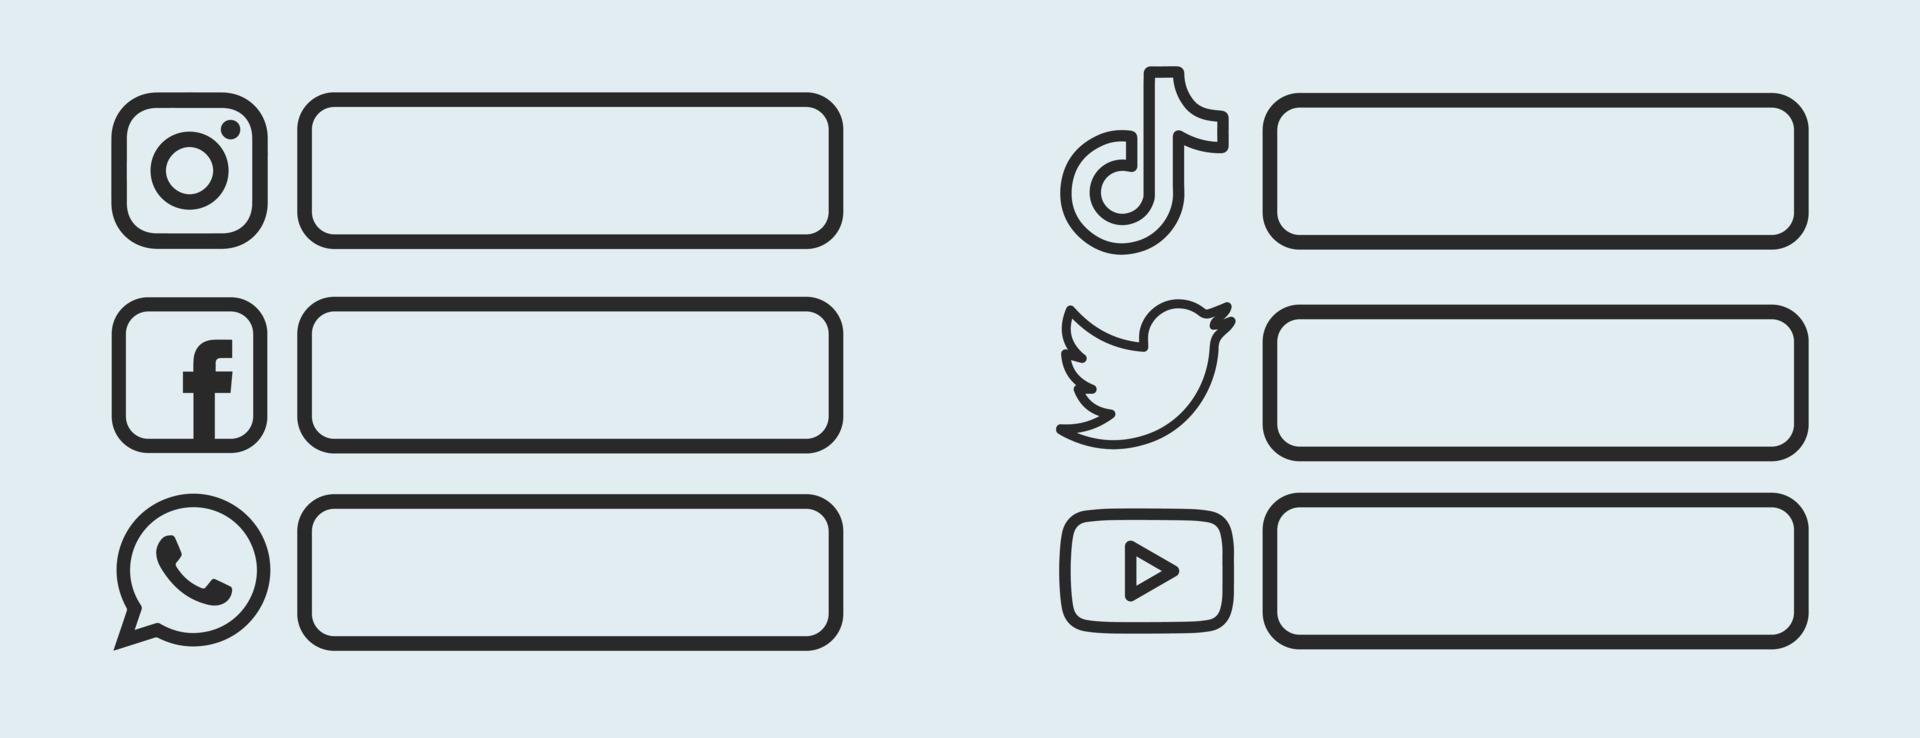 rede de mídia social simples inferior terceiro modelo de vetor de ícone. símbolo de mídia social preto.